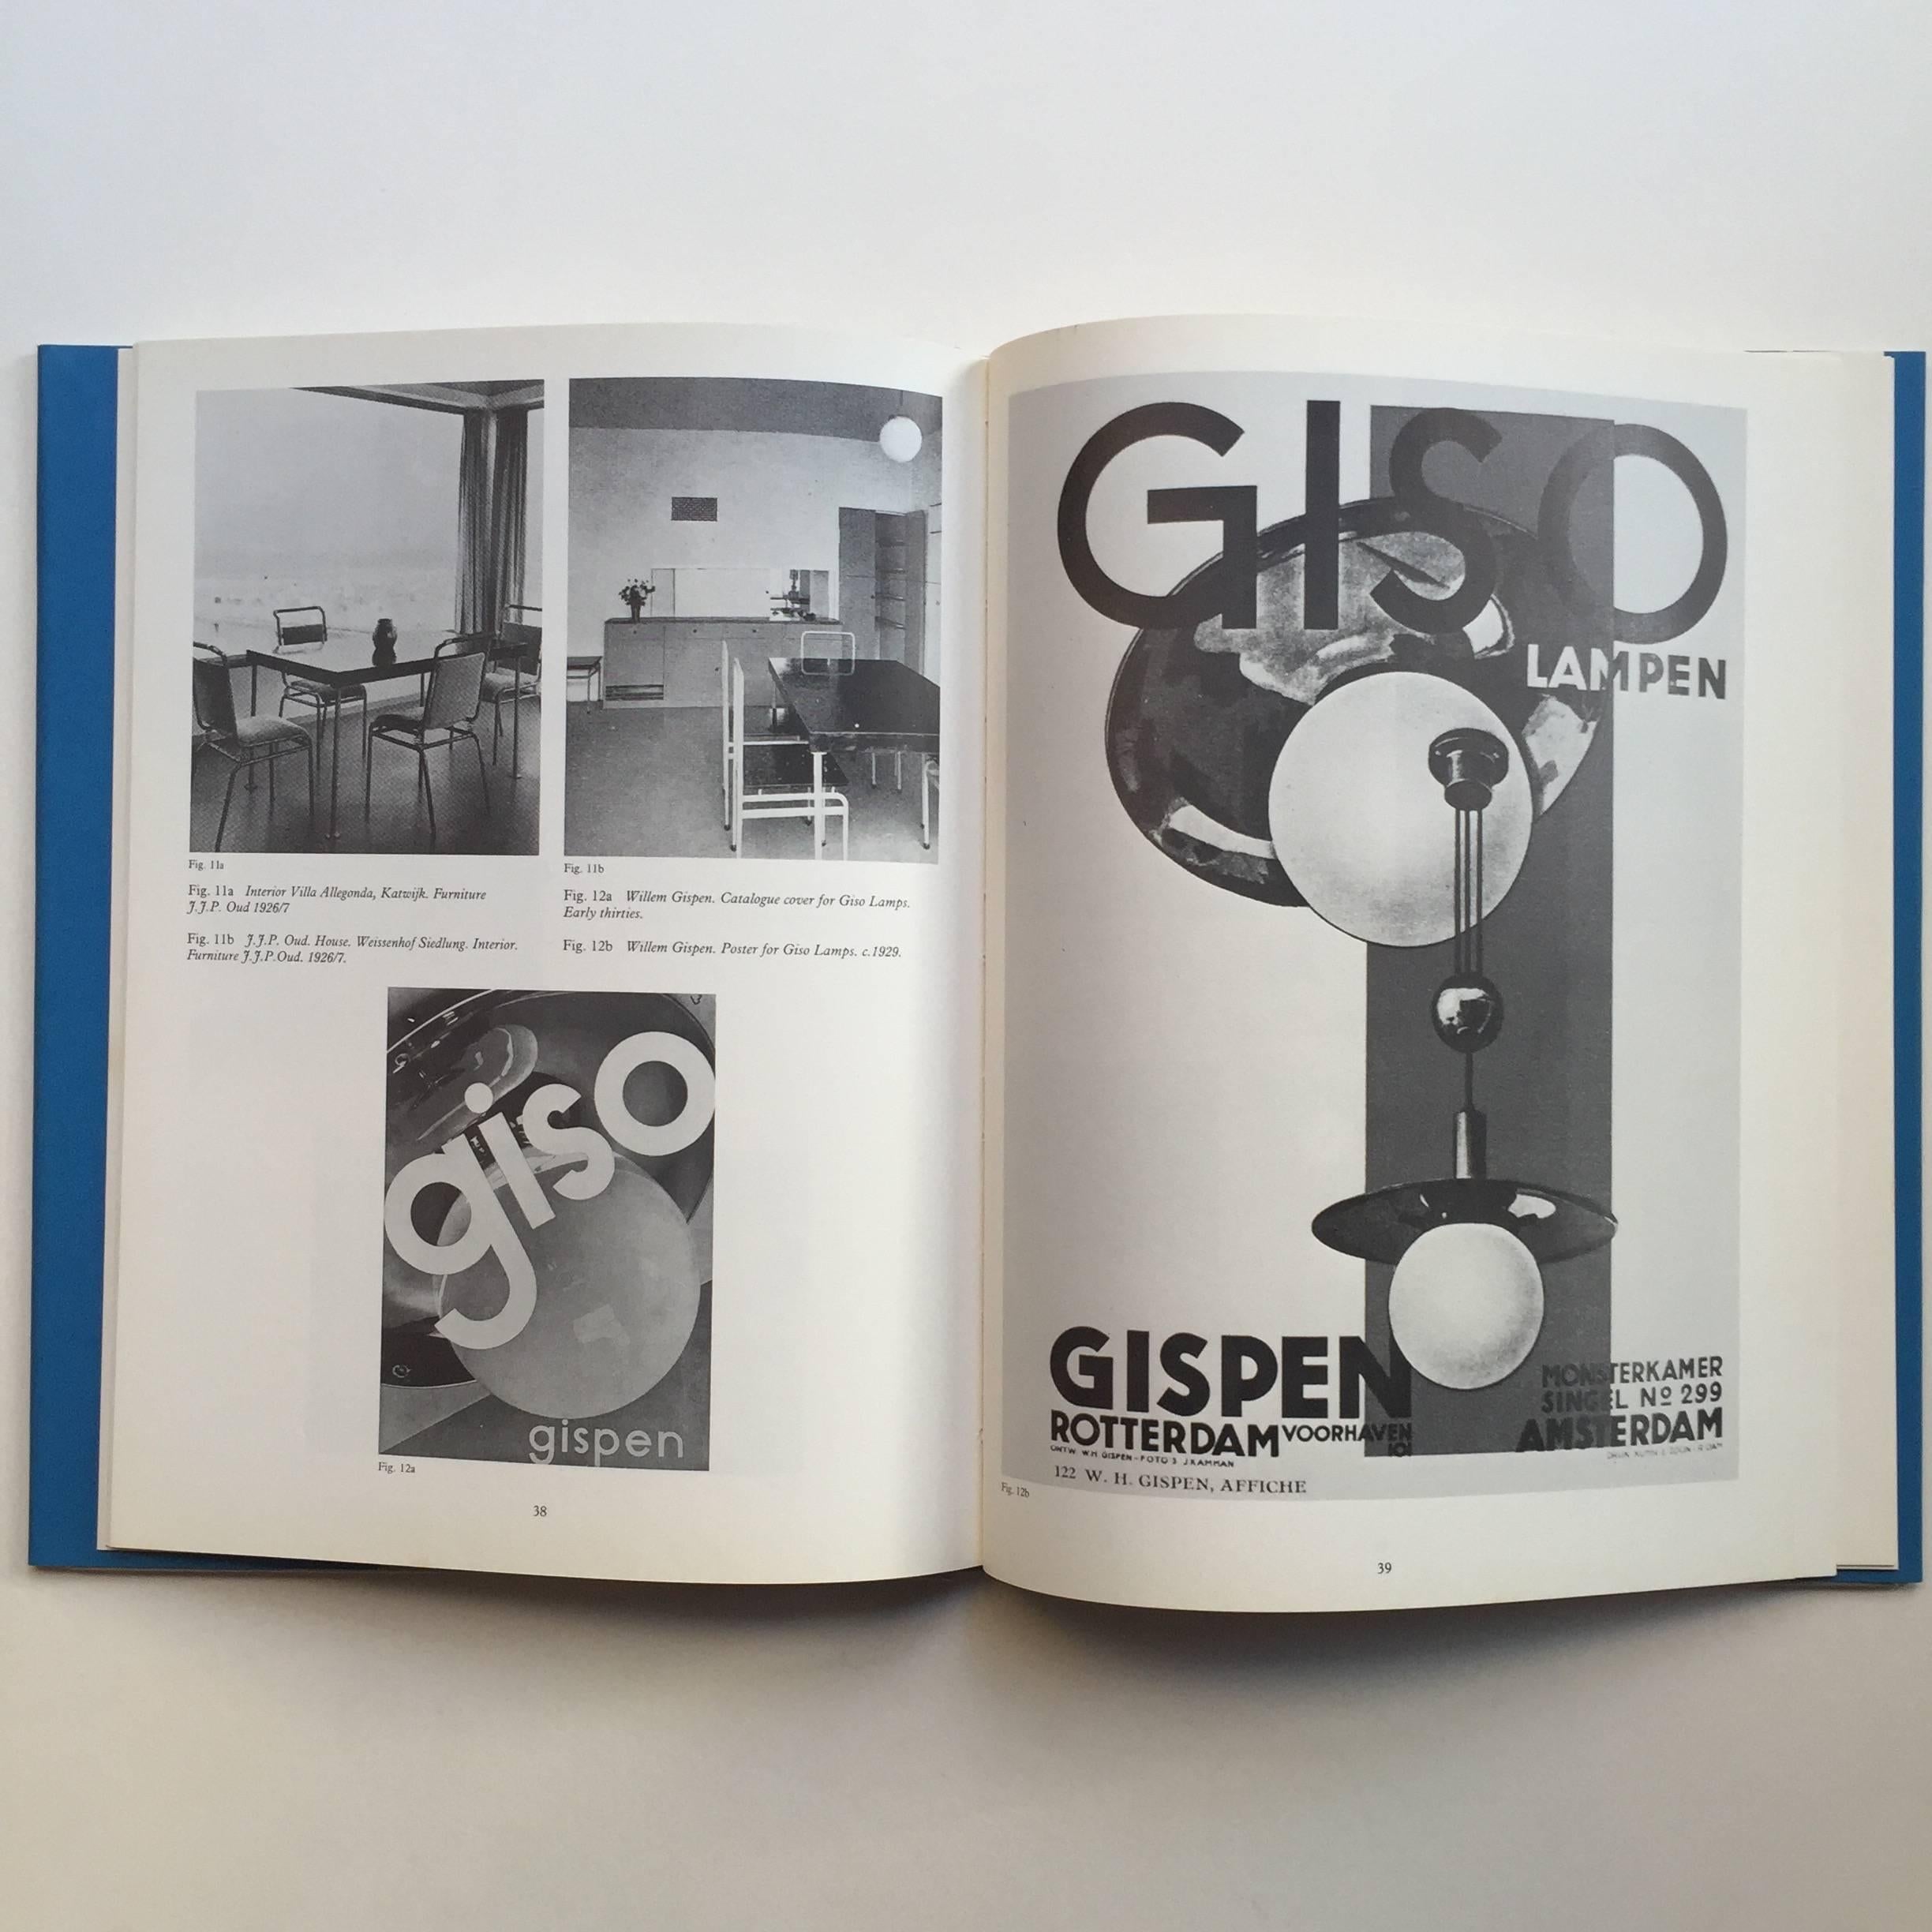 Erste Ausgabe, veröffentlicht von The Art Book Company, 1979

Dieser detaillierte Überblick über Stahlrohrmöbel dokumentiert die Entwicklung von Stil, Produktion und Rezeption des Stils, von den Anfängen bei Thonet und Marcel Breuer in Deutschland